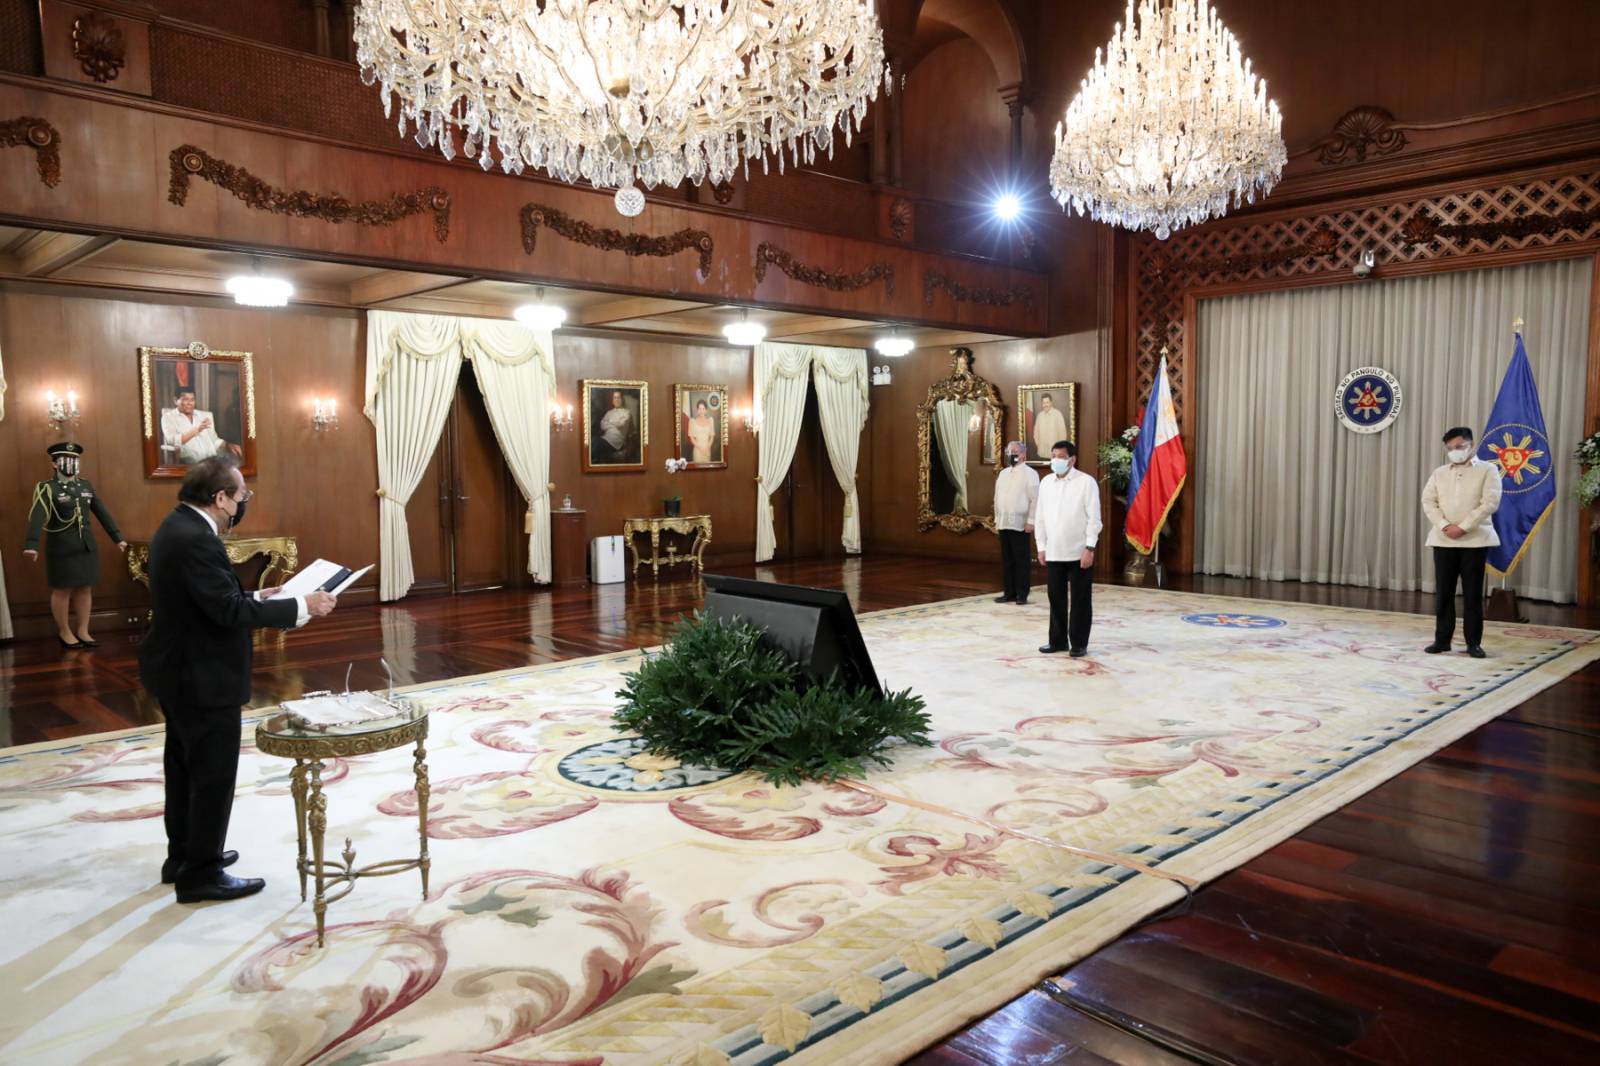 L’Ambasciatore del Sovrano Ordine di Malta presso le Filippine presenta le sue lettere credenziali